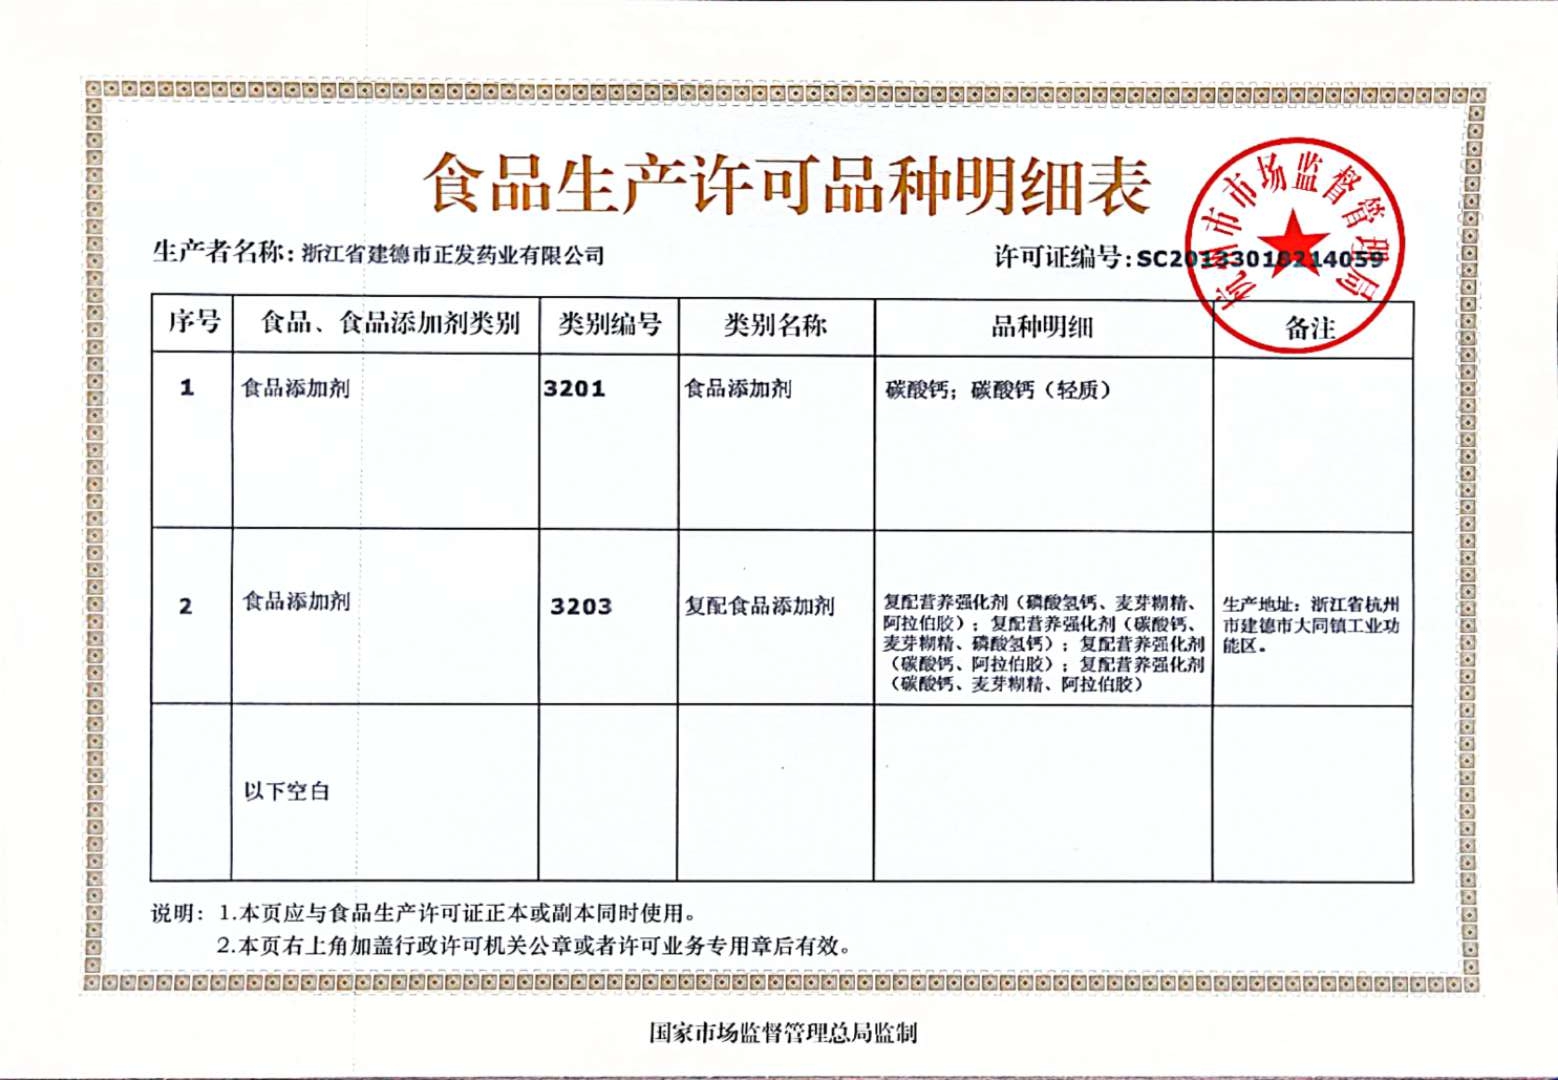 公司一次性通過浙江省藥品監督管理局組織的藥品GMP符合性的現場核查